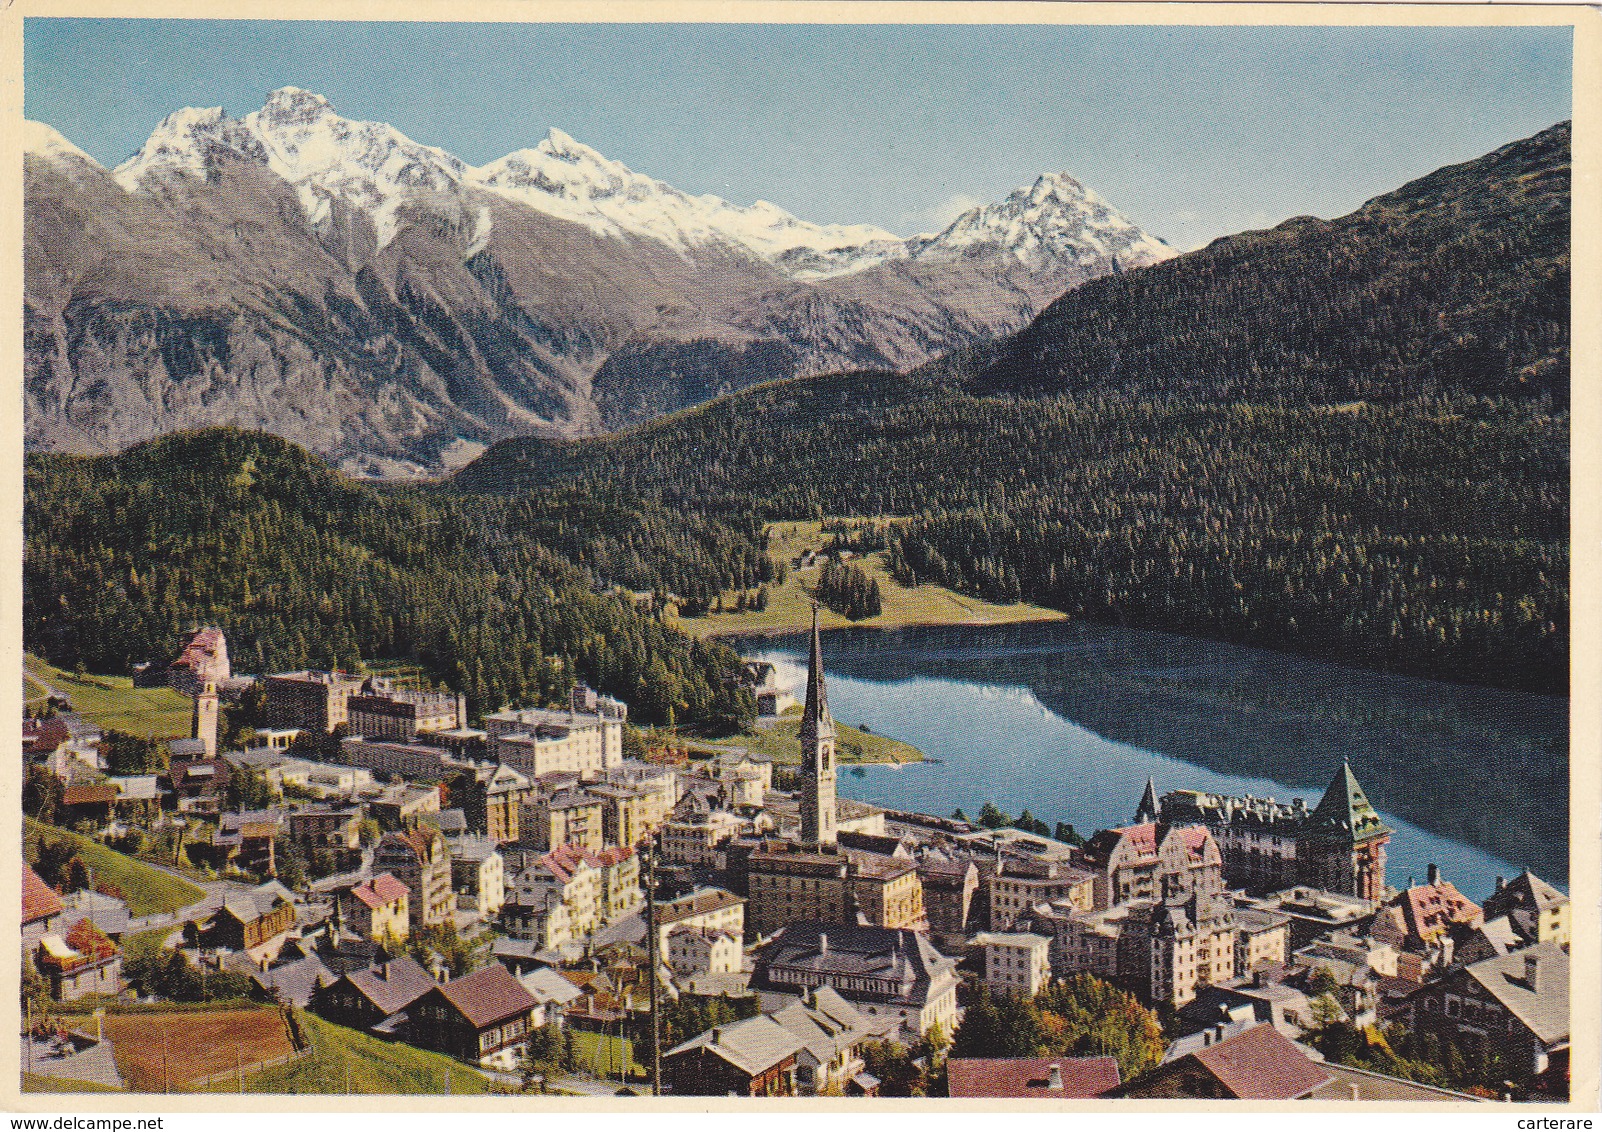 Suisse,helvetia,swiss,schweiz,svizzera,switzerland ,GRISONS,SAINT MORITZ ,district De MALOJA - Saint-Moritz